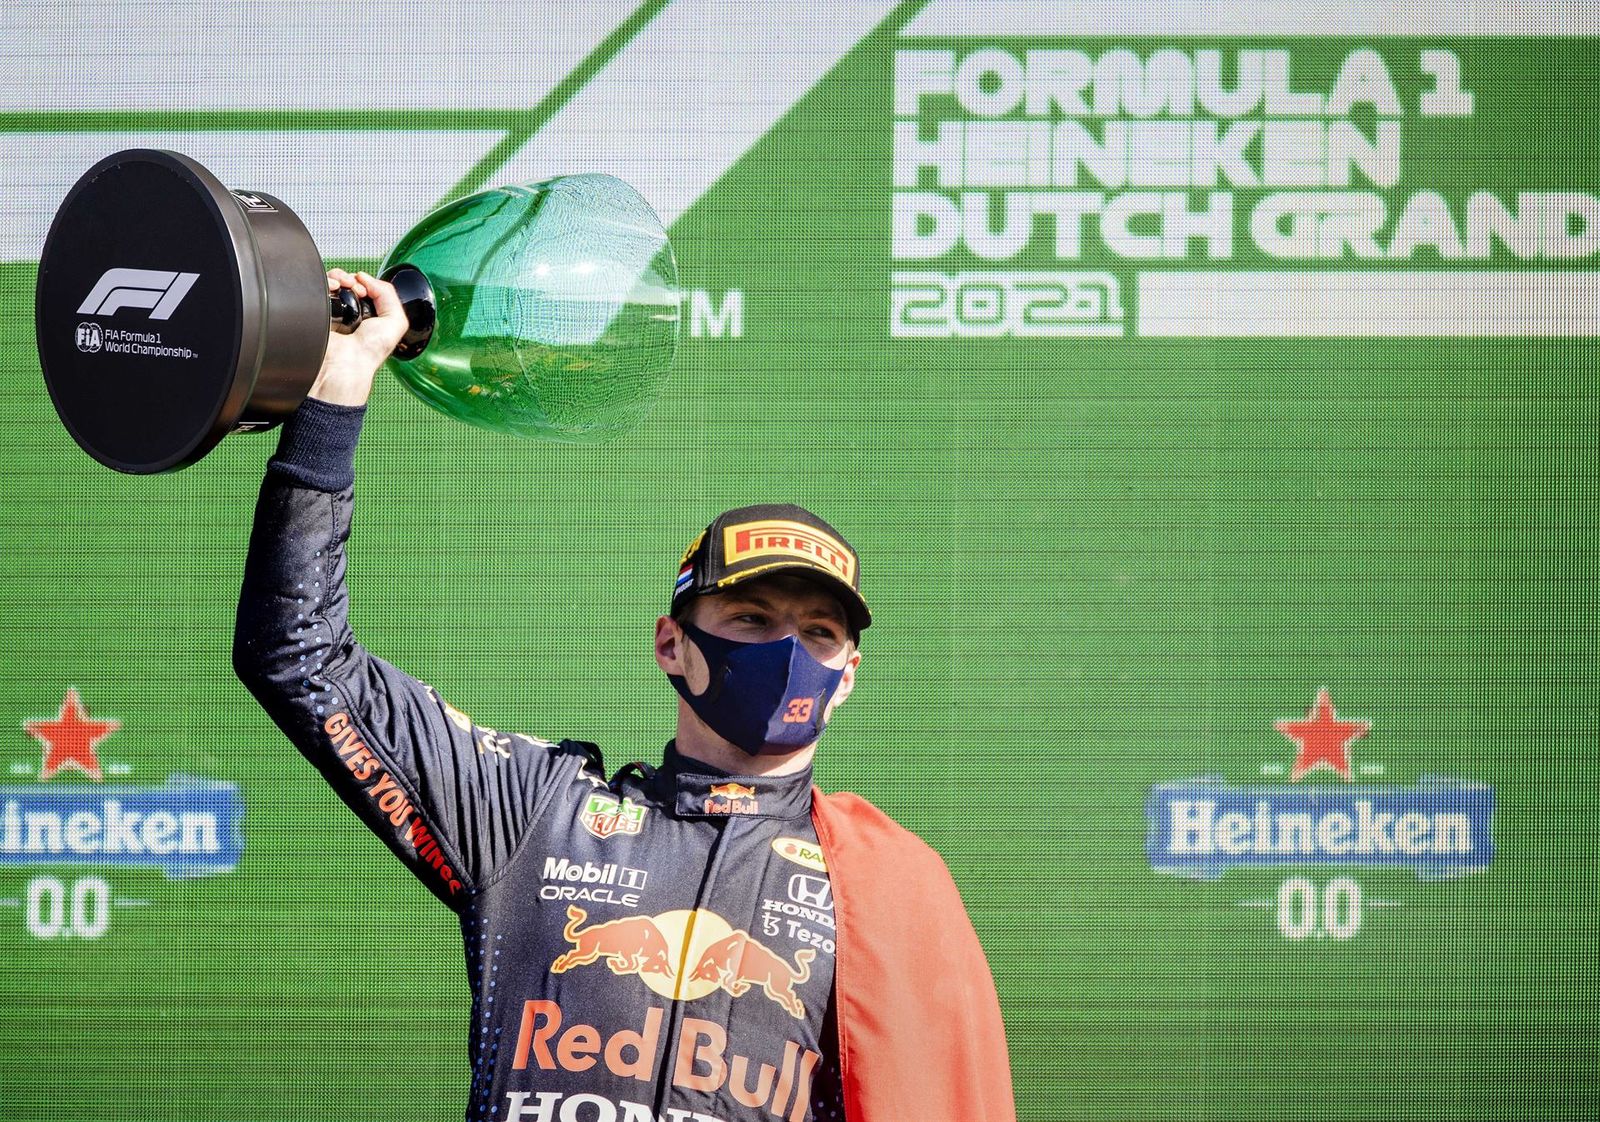 Gran Premio de Formula 1 de Países Bajos